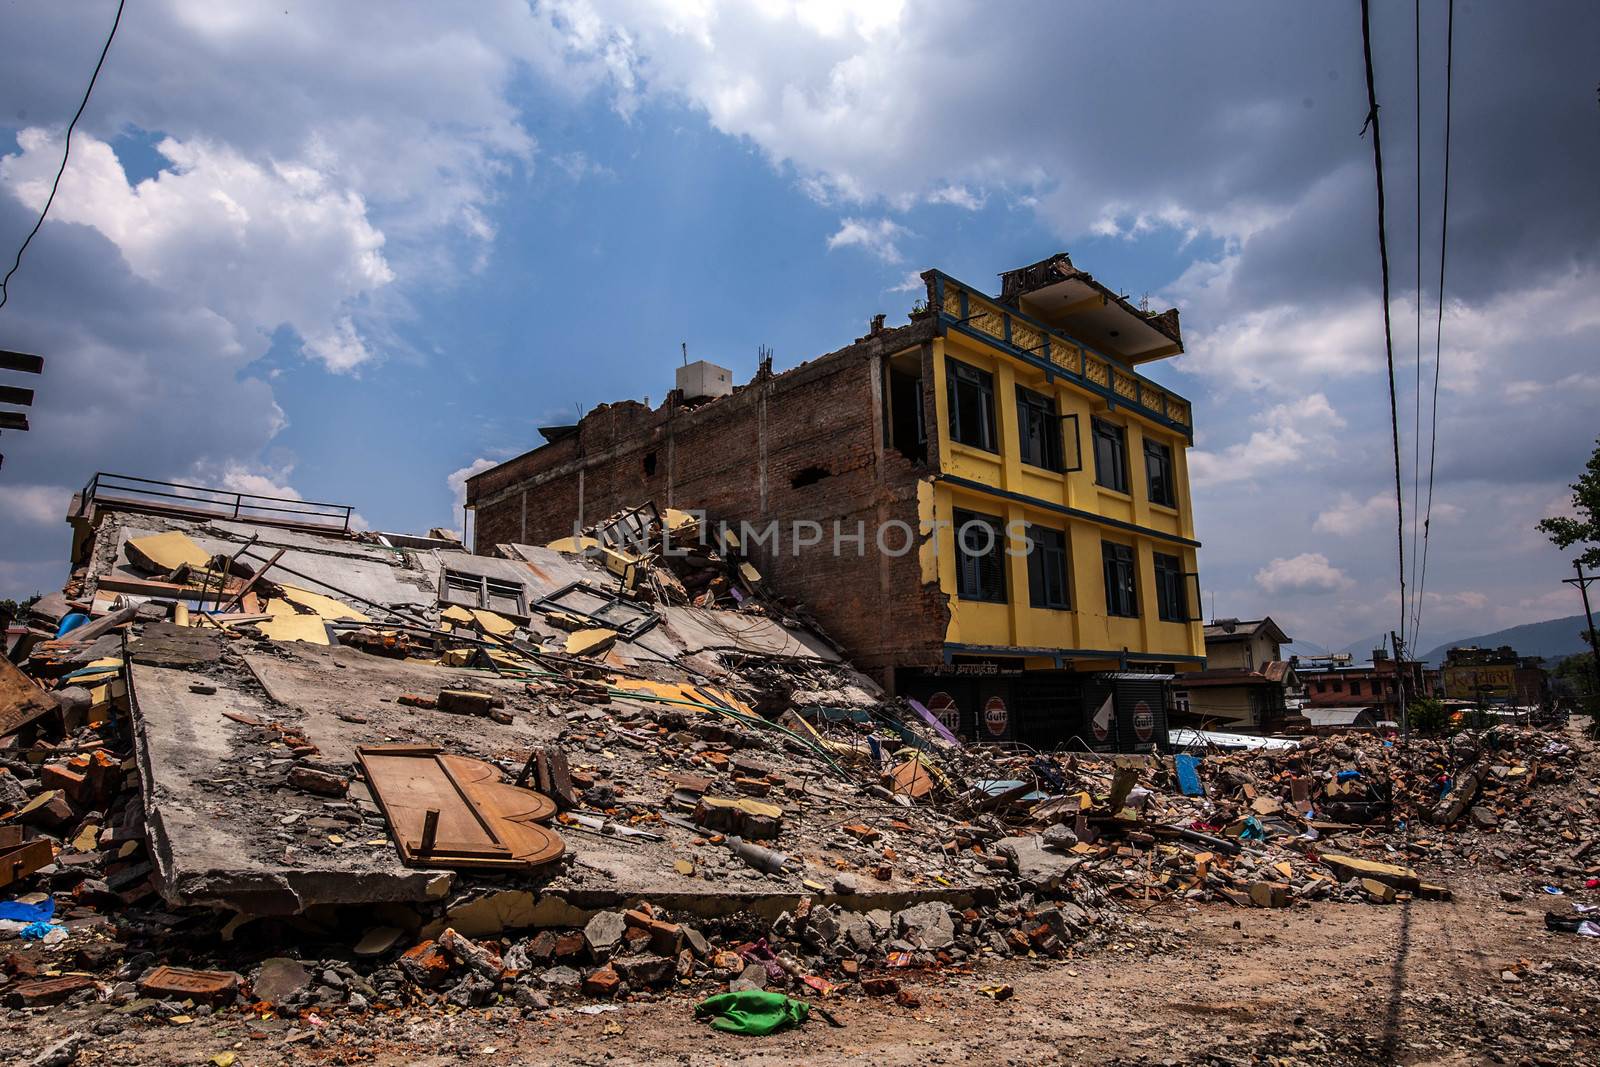 NEPAL-KATHMANDU-2015 EARTHQUAKE by newzulu